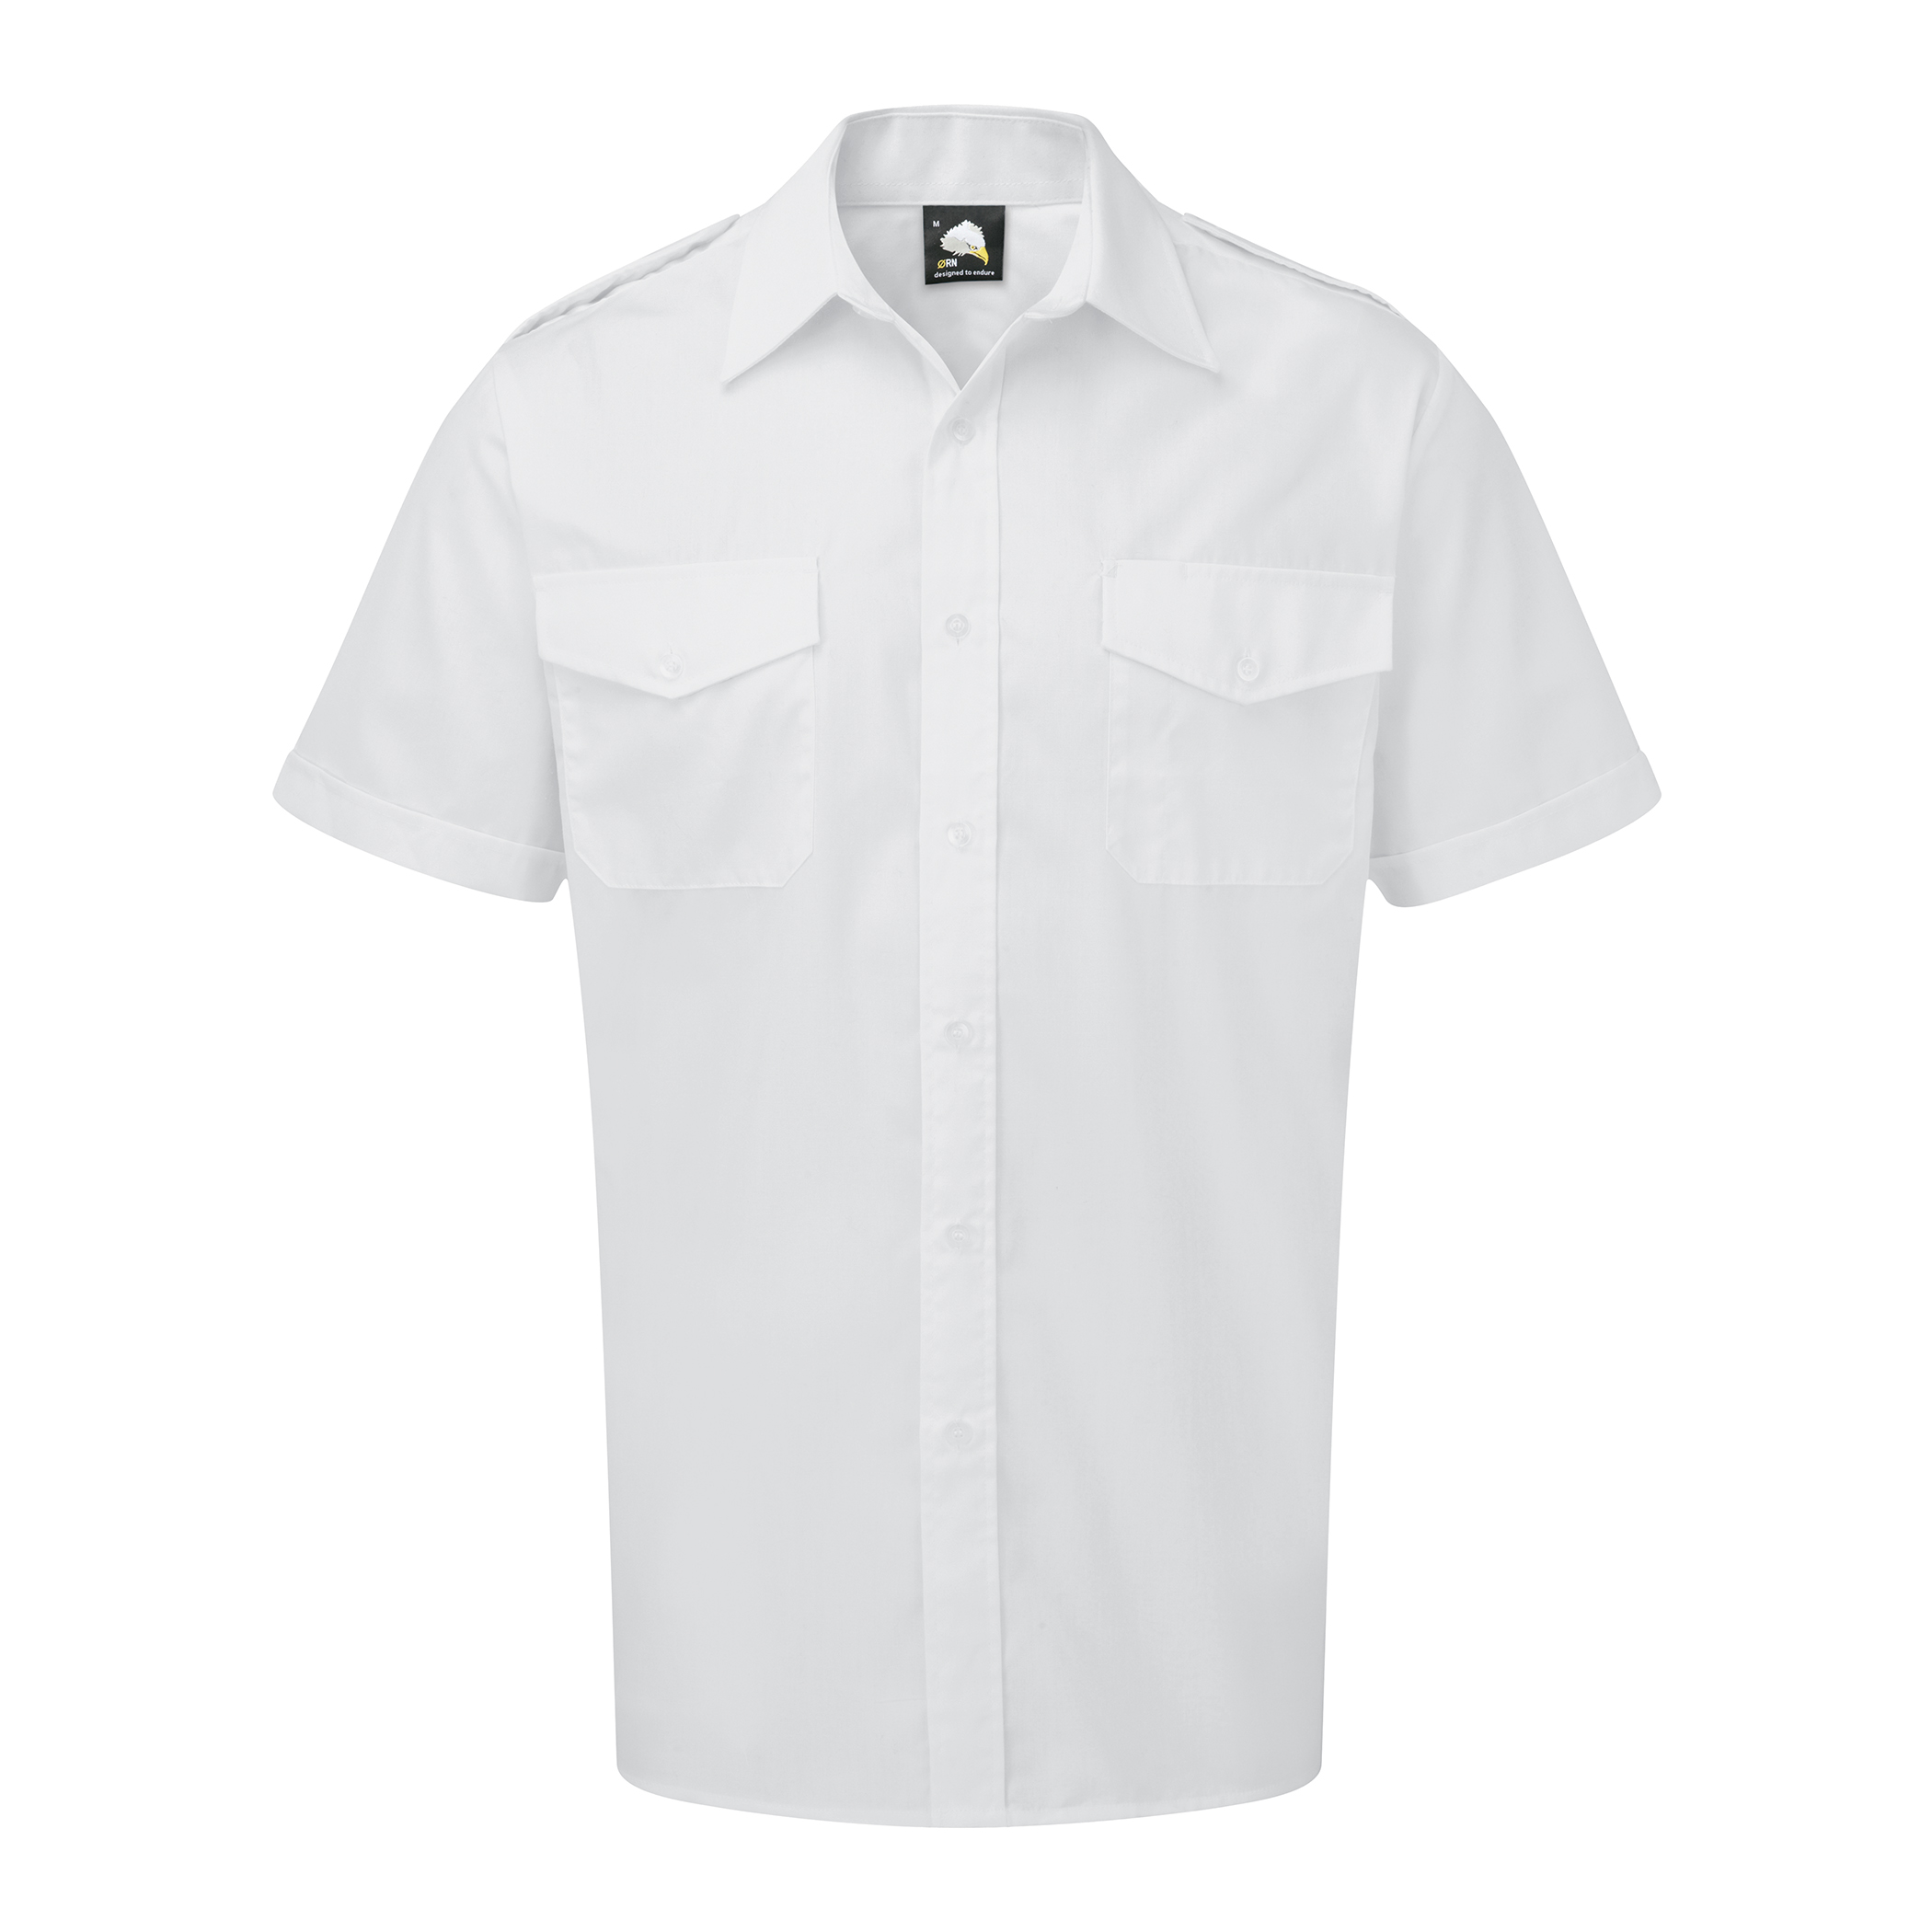 5800 - Essential S/S Pilot Shirt 